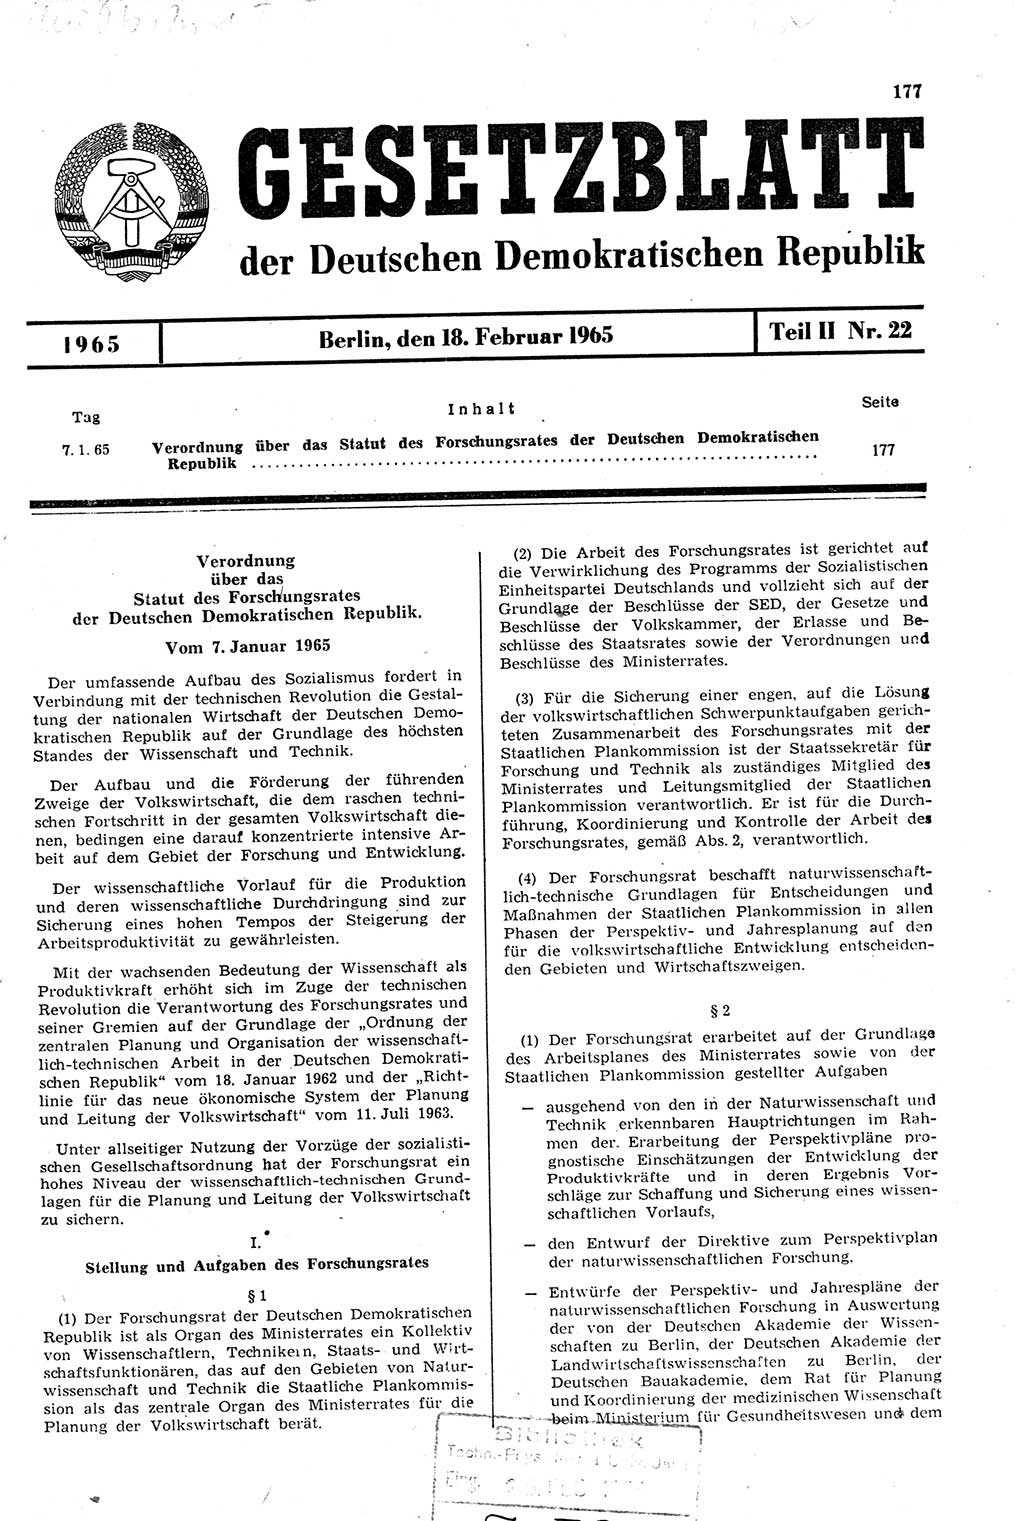 Gesetzblatt (GBl.) der Deutschen Demokratischen Republik (DDR) Teil ⅠⅠ 1965, Seite 177 (GBl. DDR ⅠⅠ 1965, S. 177)